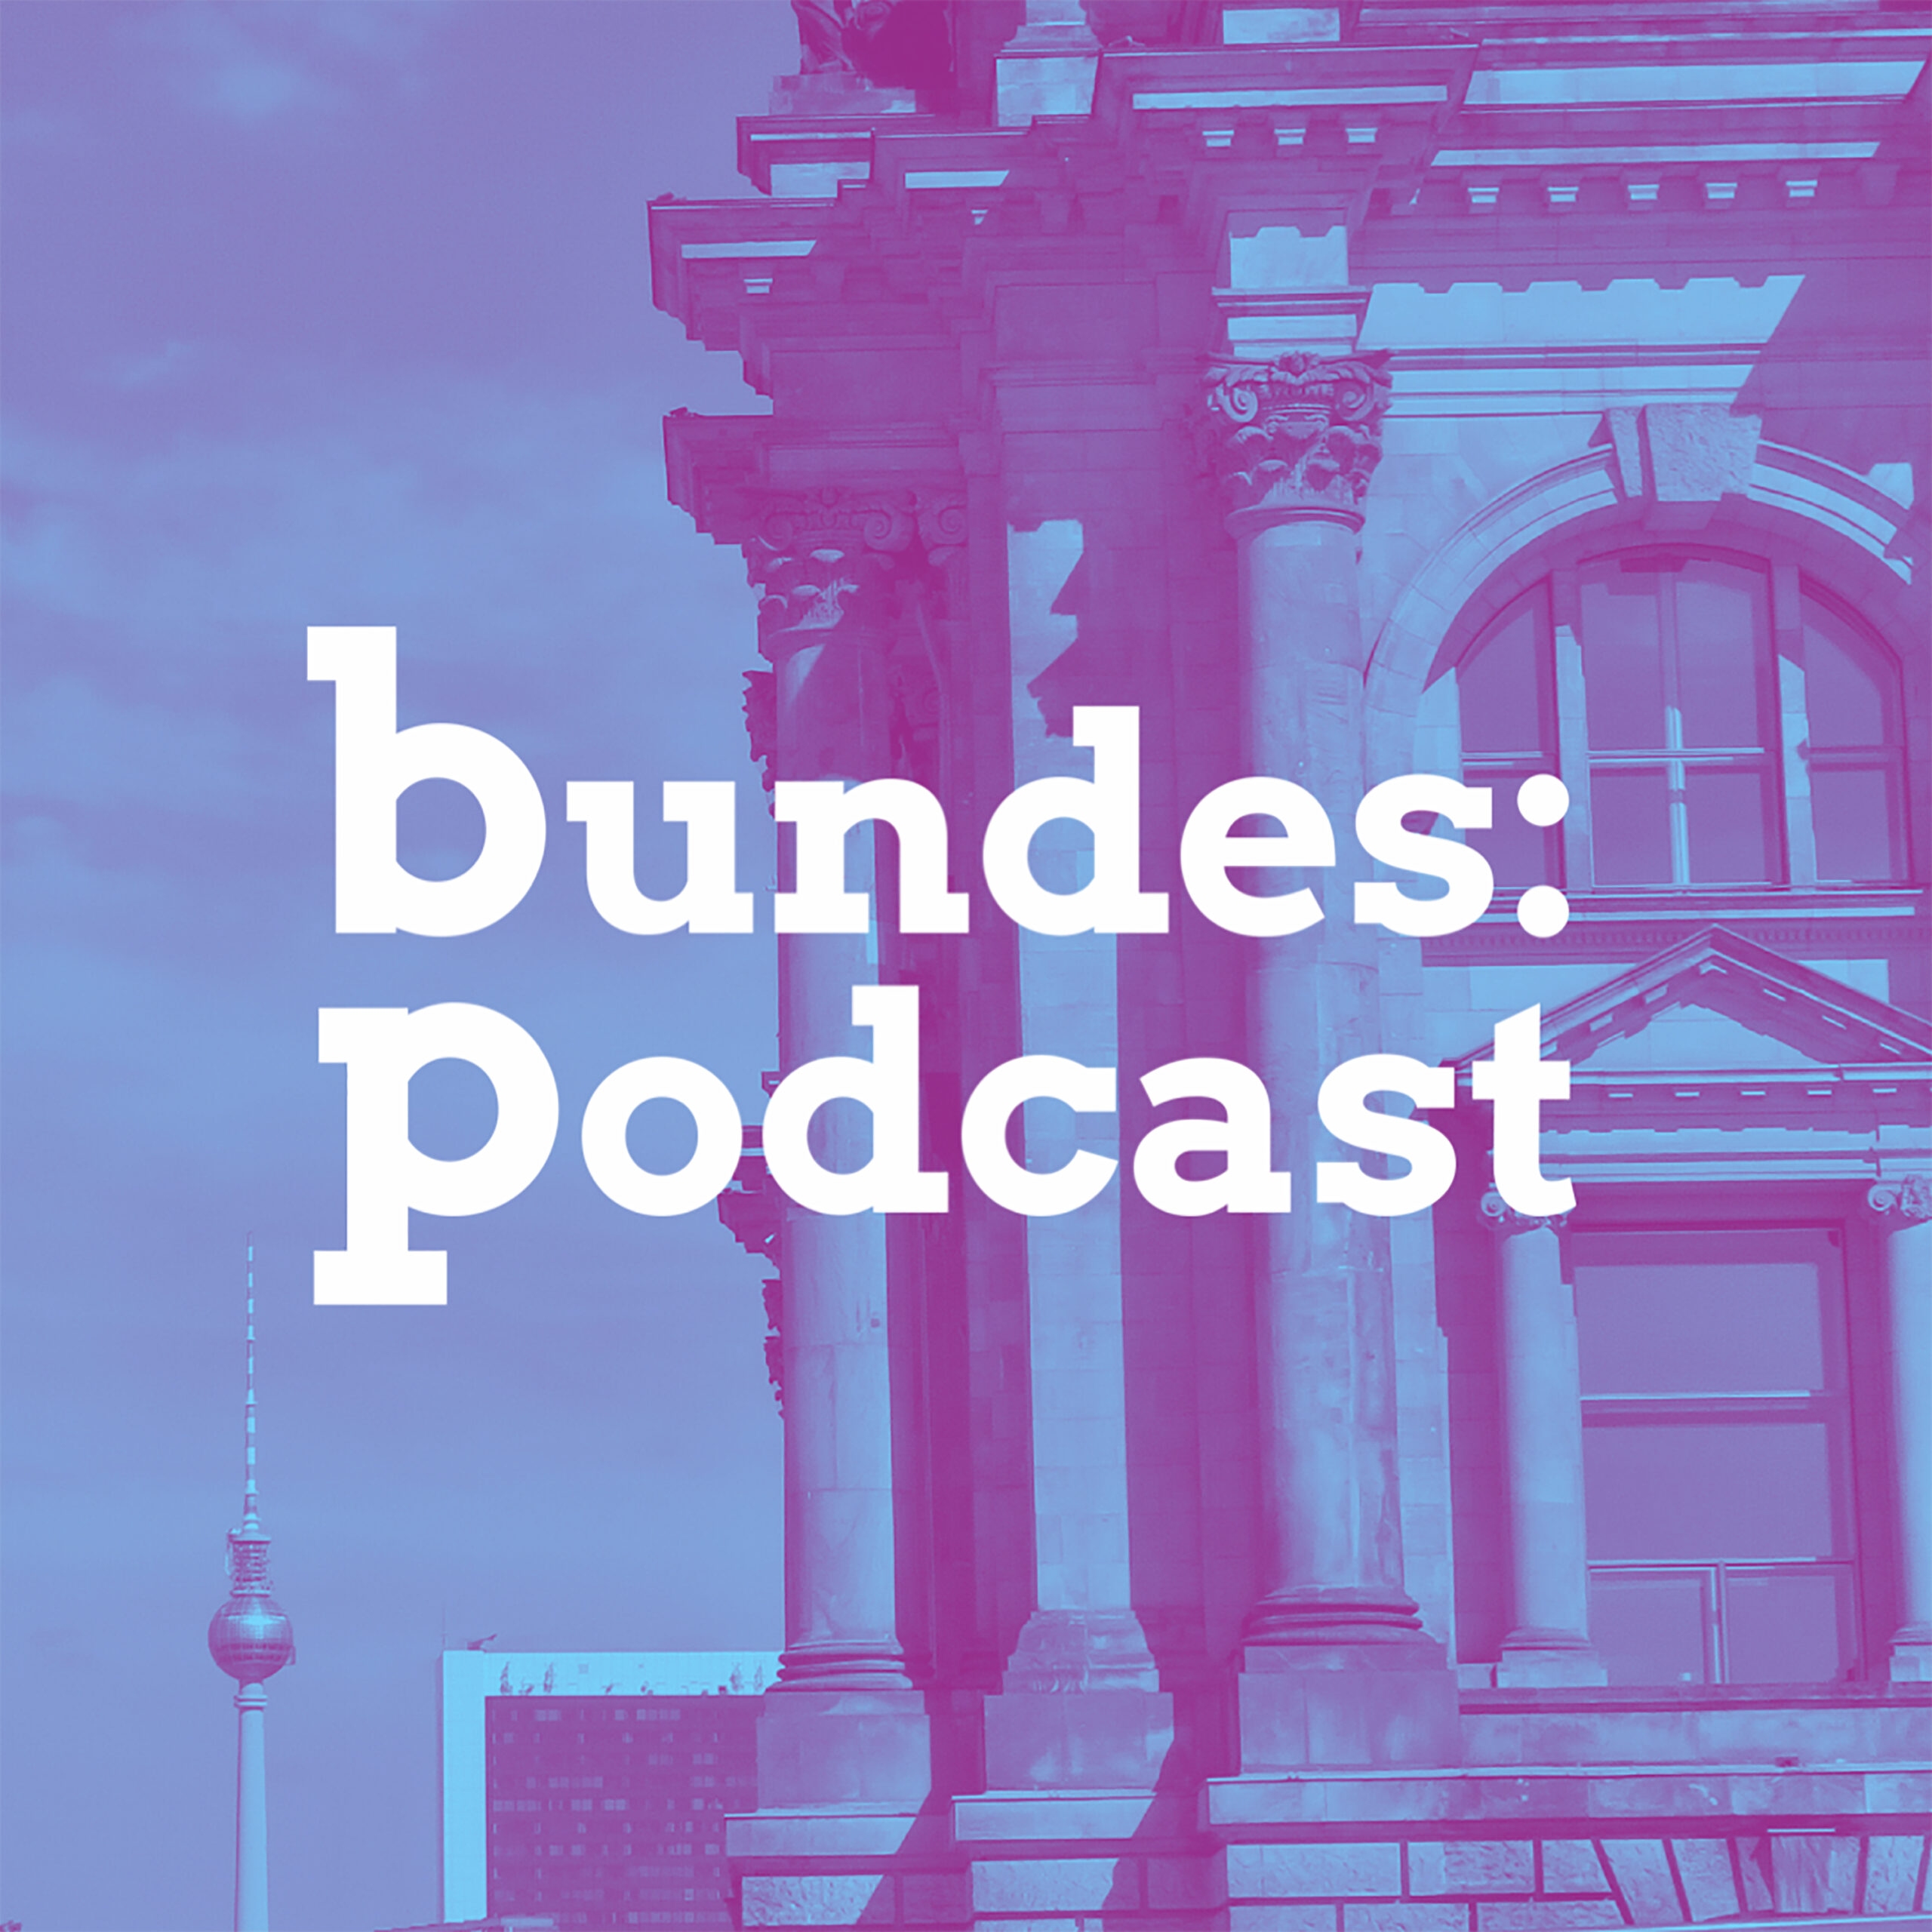 bundes:podcast